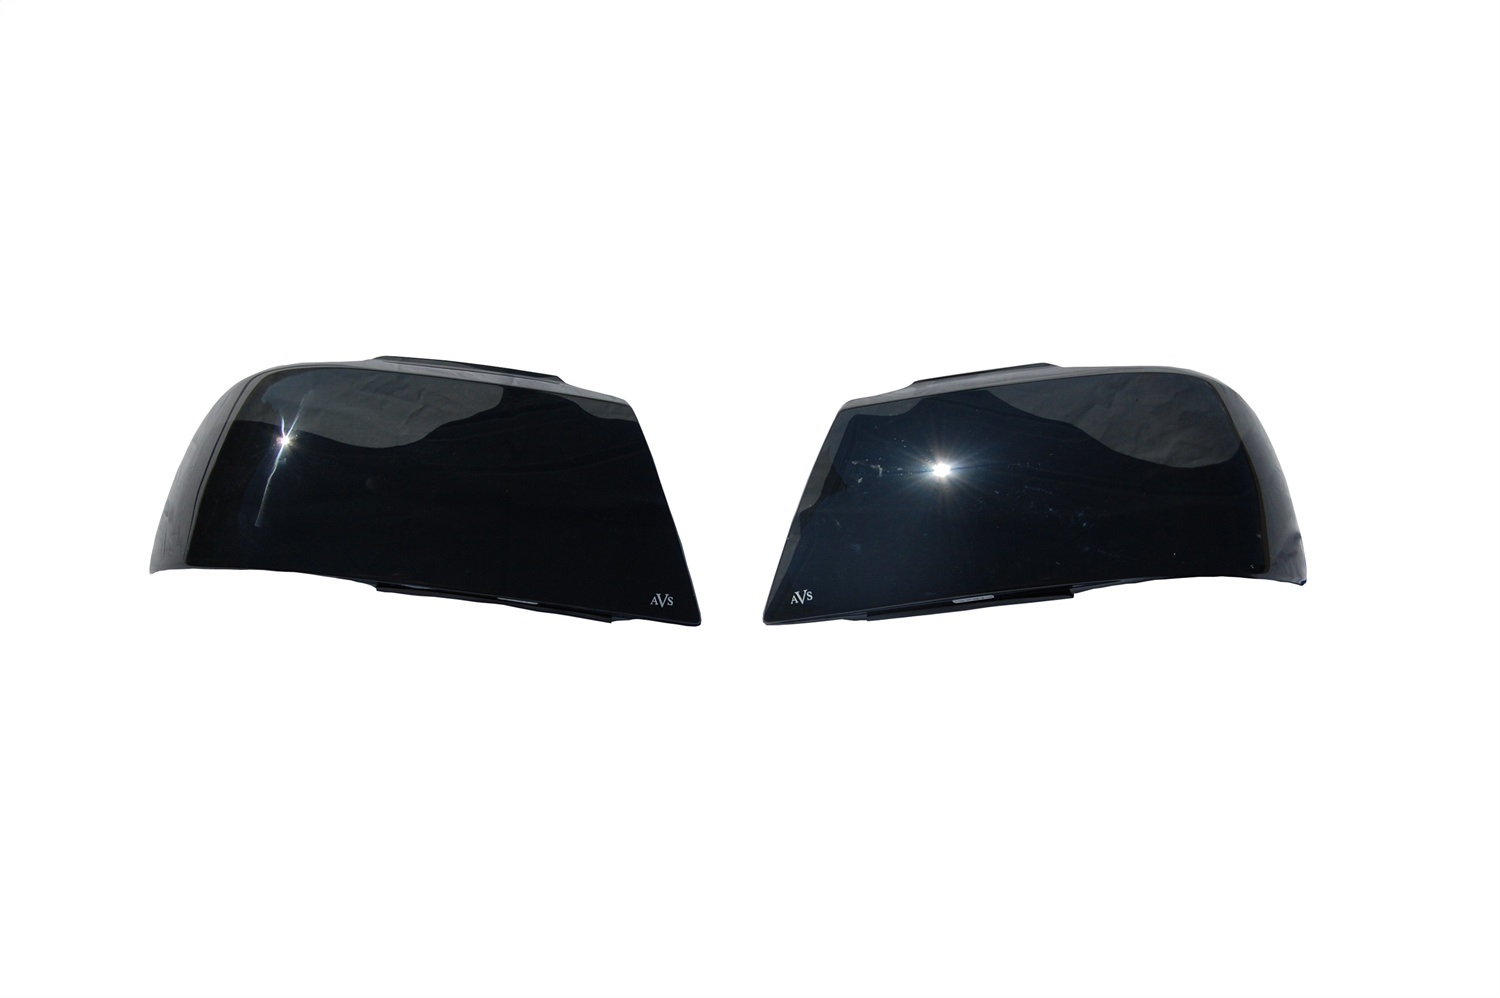 Auto Ventshade Auto Ventshade 37459 Headlight Covers Fits 93-97 Camaro